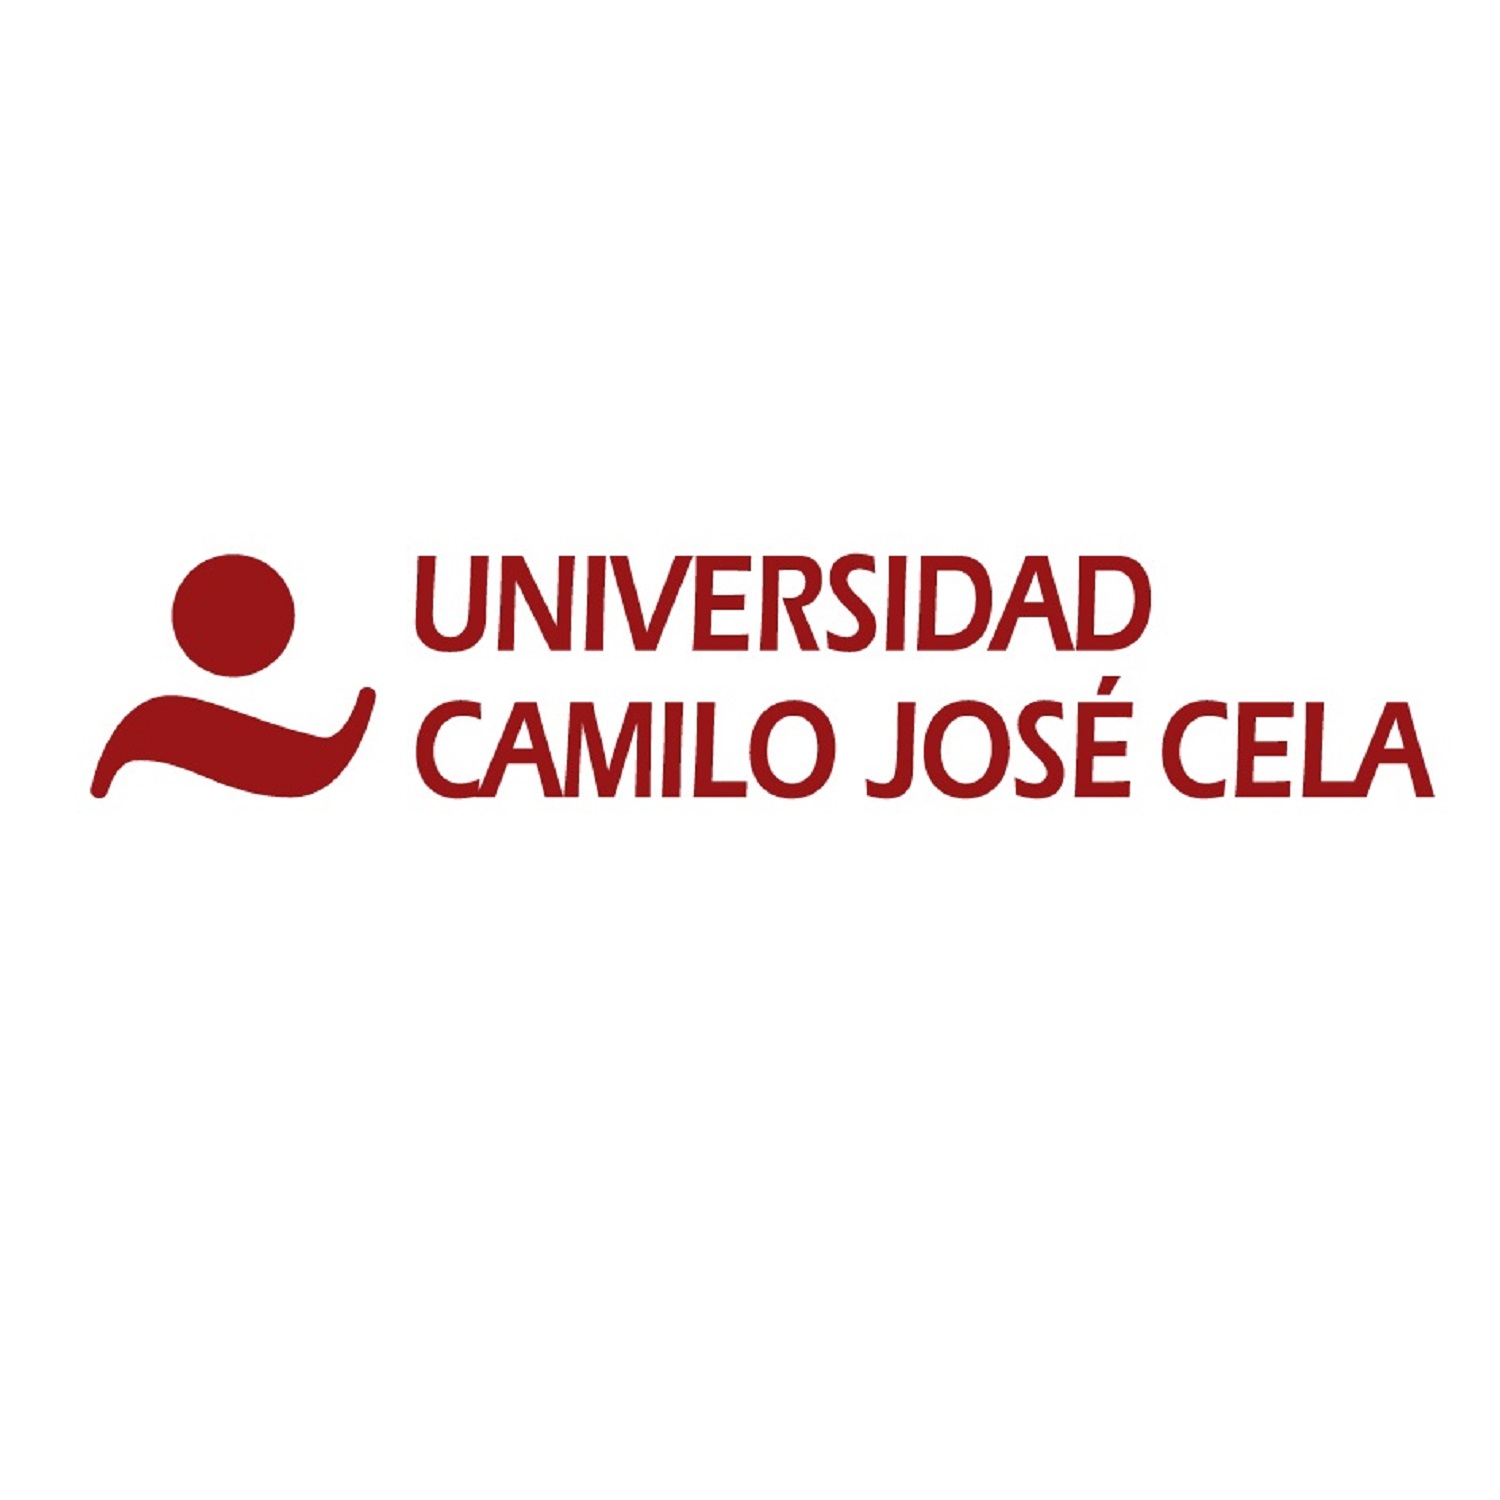 西班牙卡米洛·何塞·塞拉大学 logo